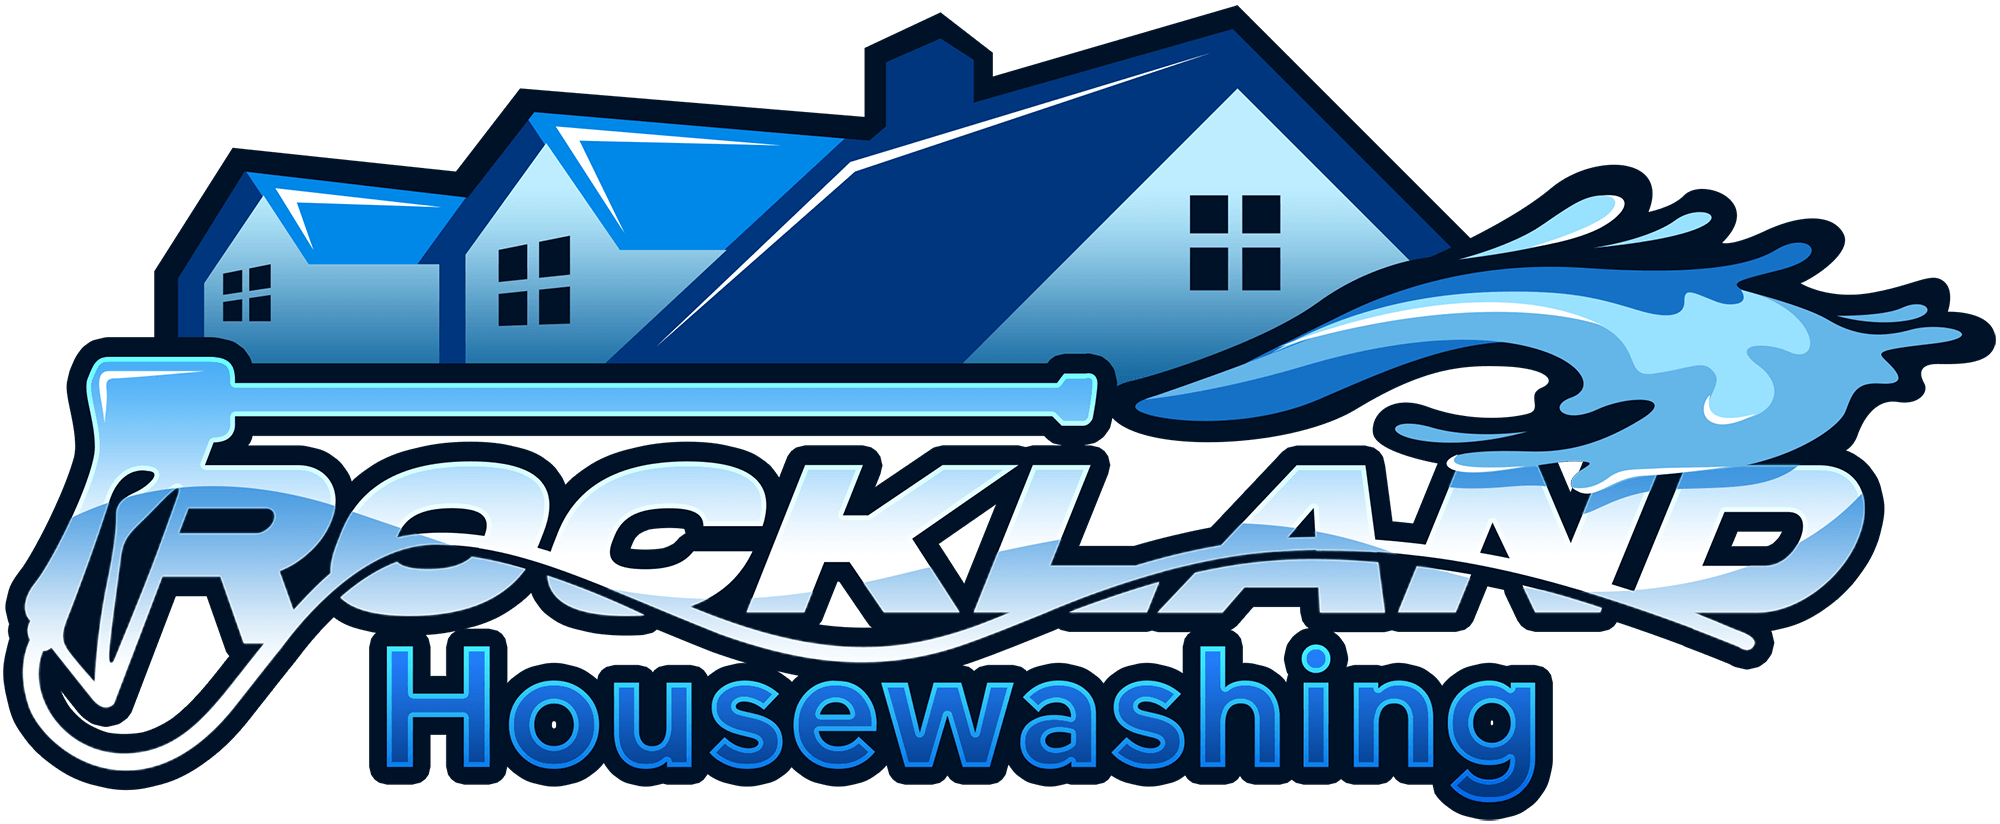 Rockland Housewashing Power Washing and House Washing Logo